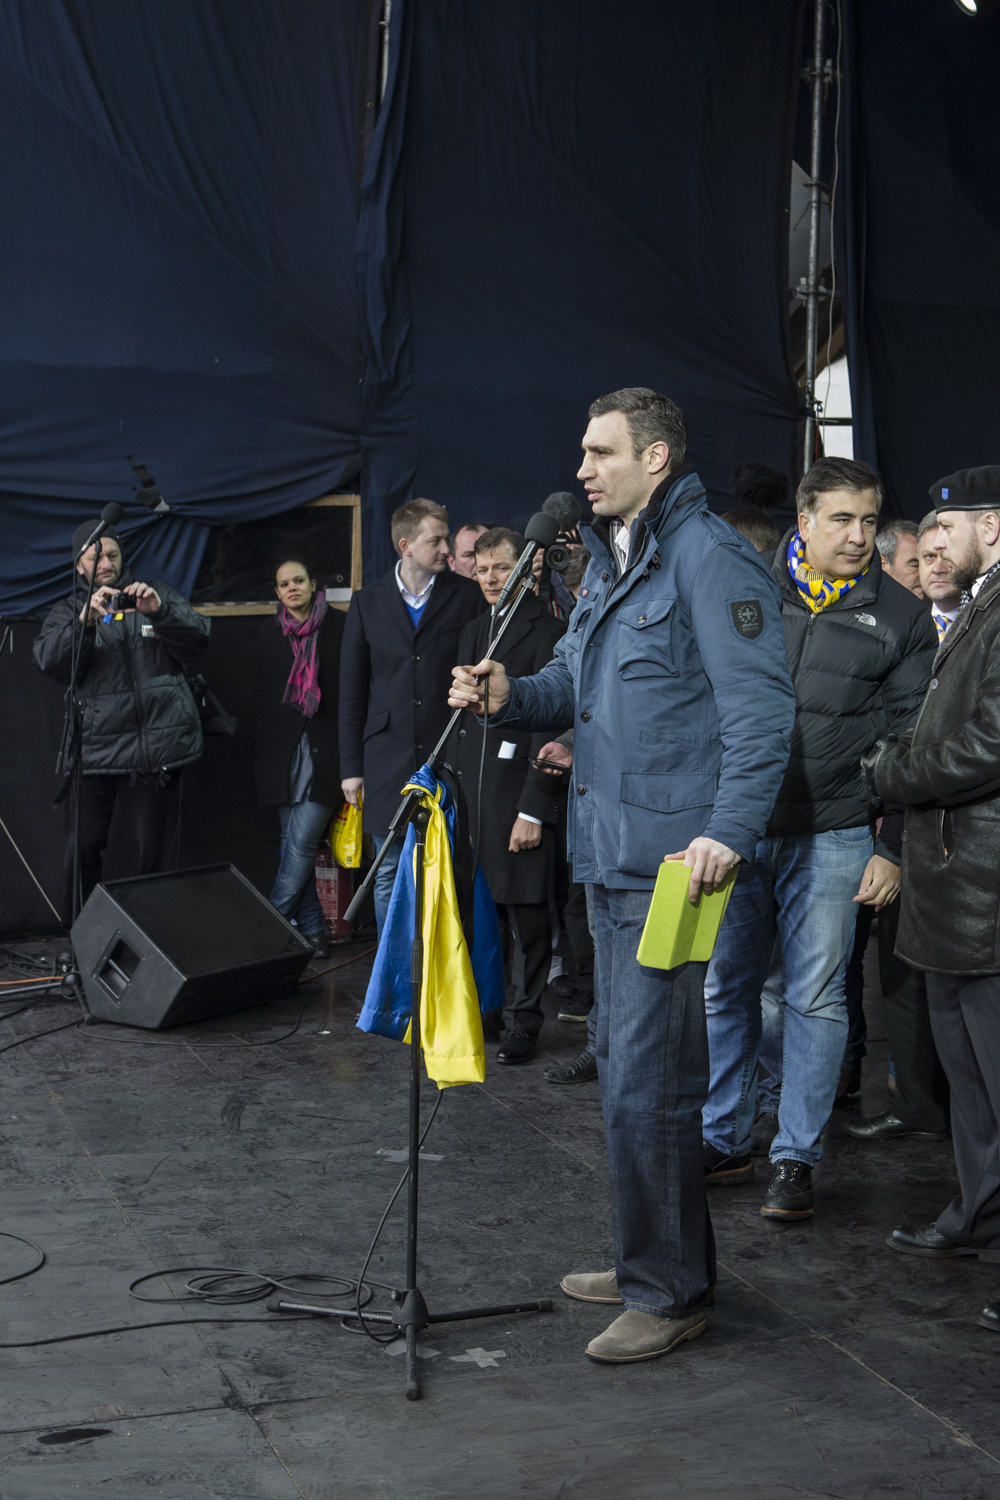 Intervention de Vitali Klitschko sur la place Maidan, Kiev le 2 mars 2014.